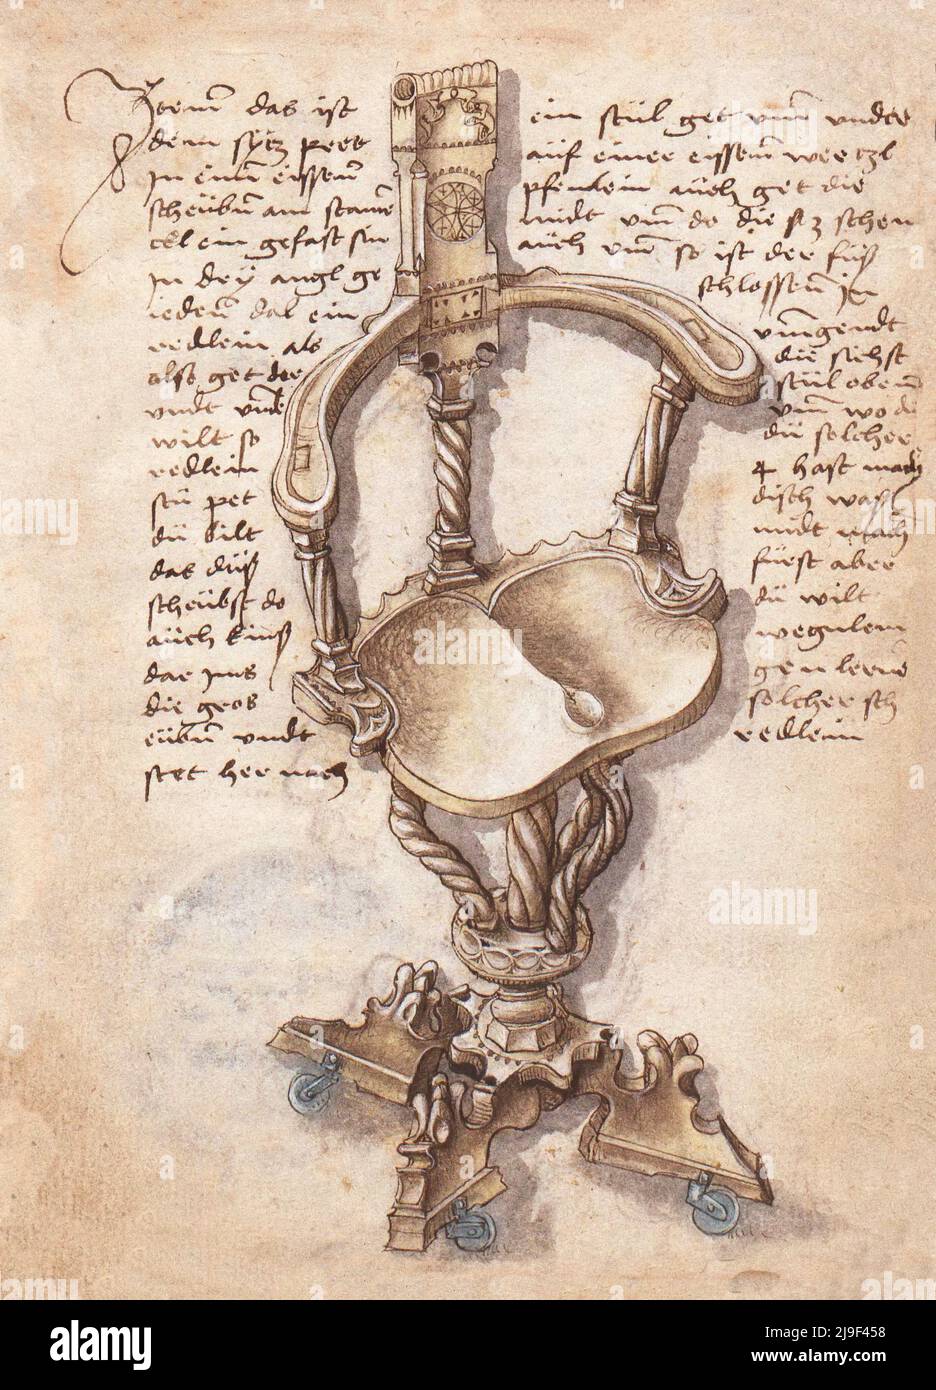 Ilustración medieval de silla giratoria móvil y de altura ajustable. Las herramientas de Martin Löffelholz (1505) Löffelholtz Codex. Ilustraciones y descripción Foto de stock